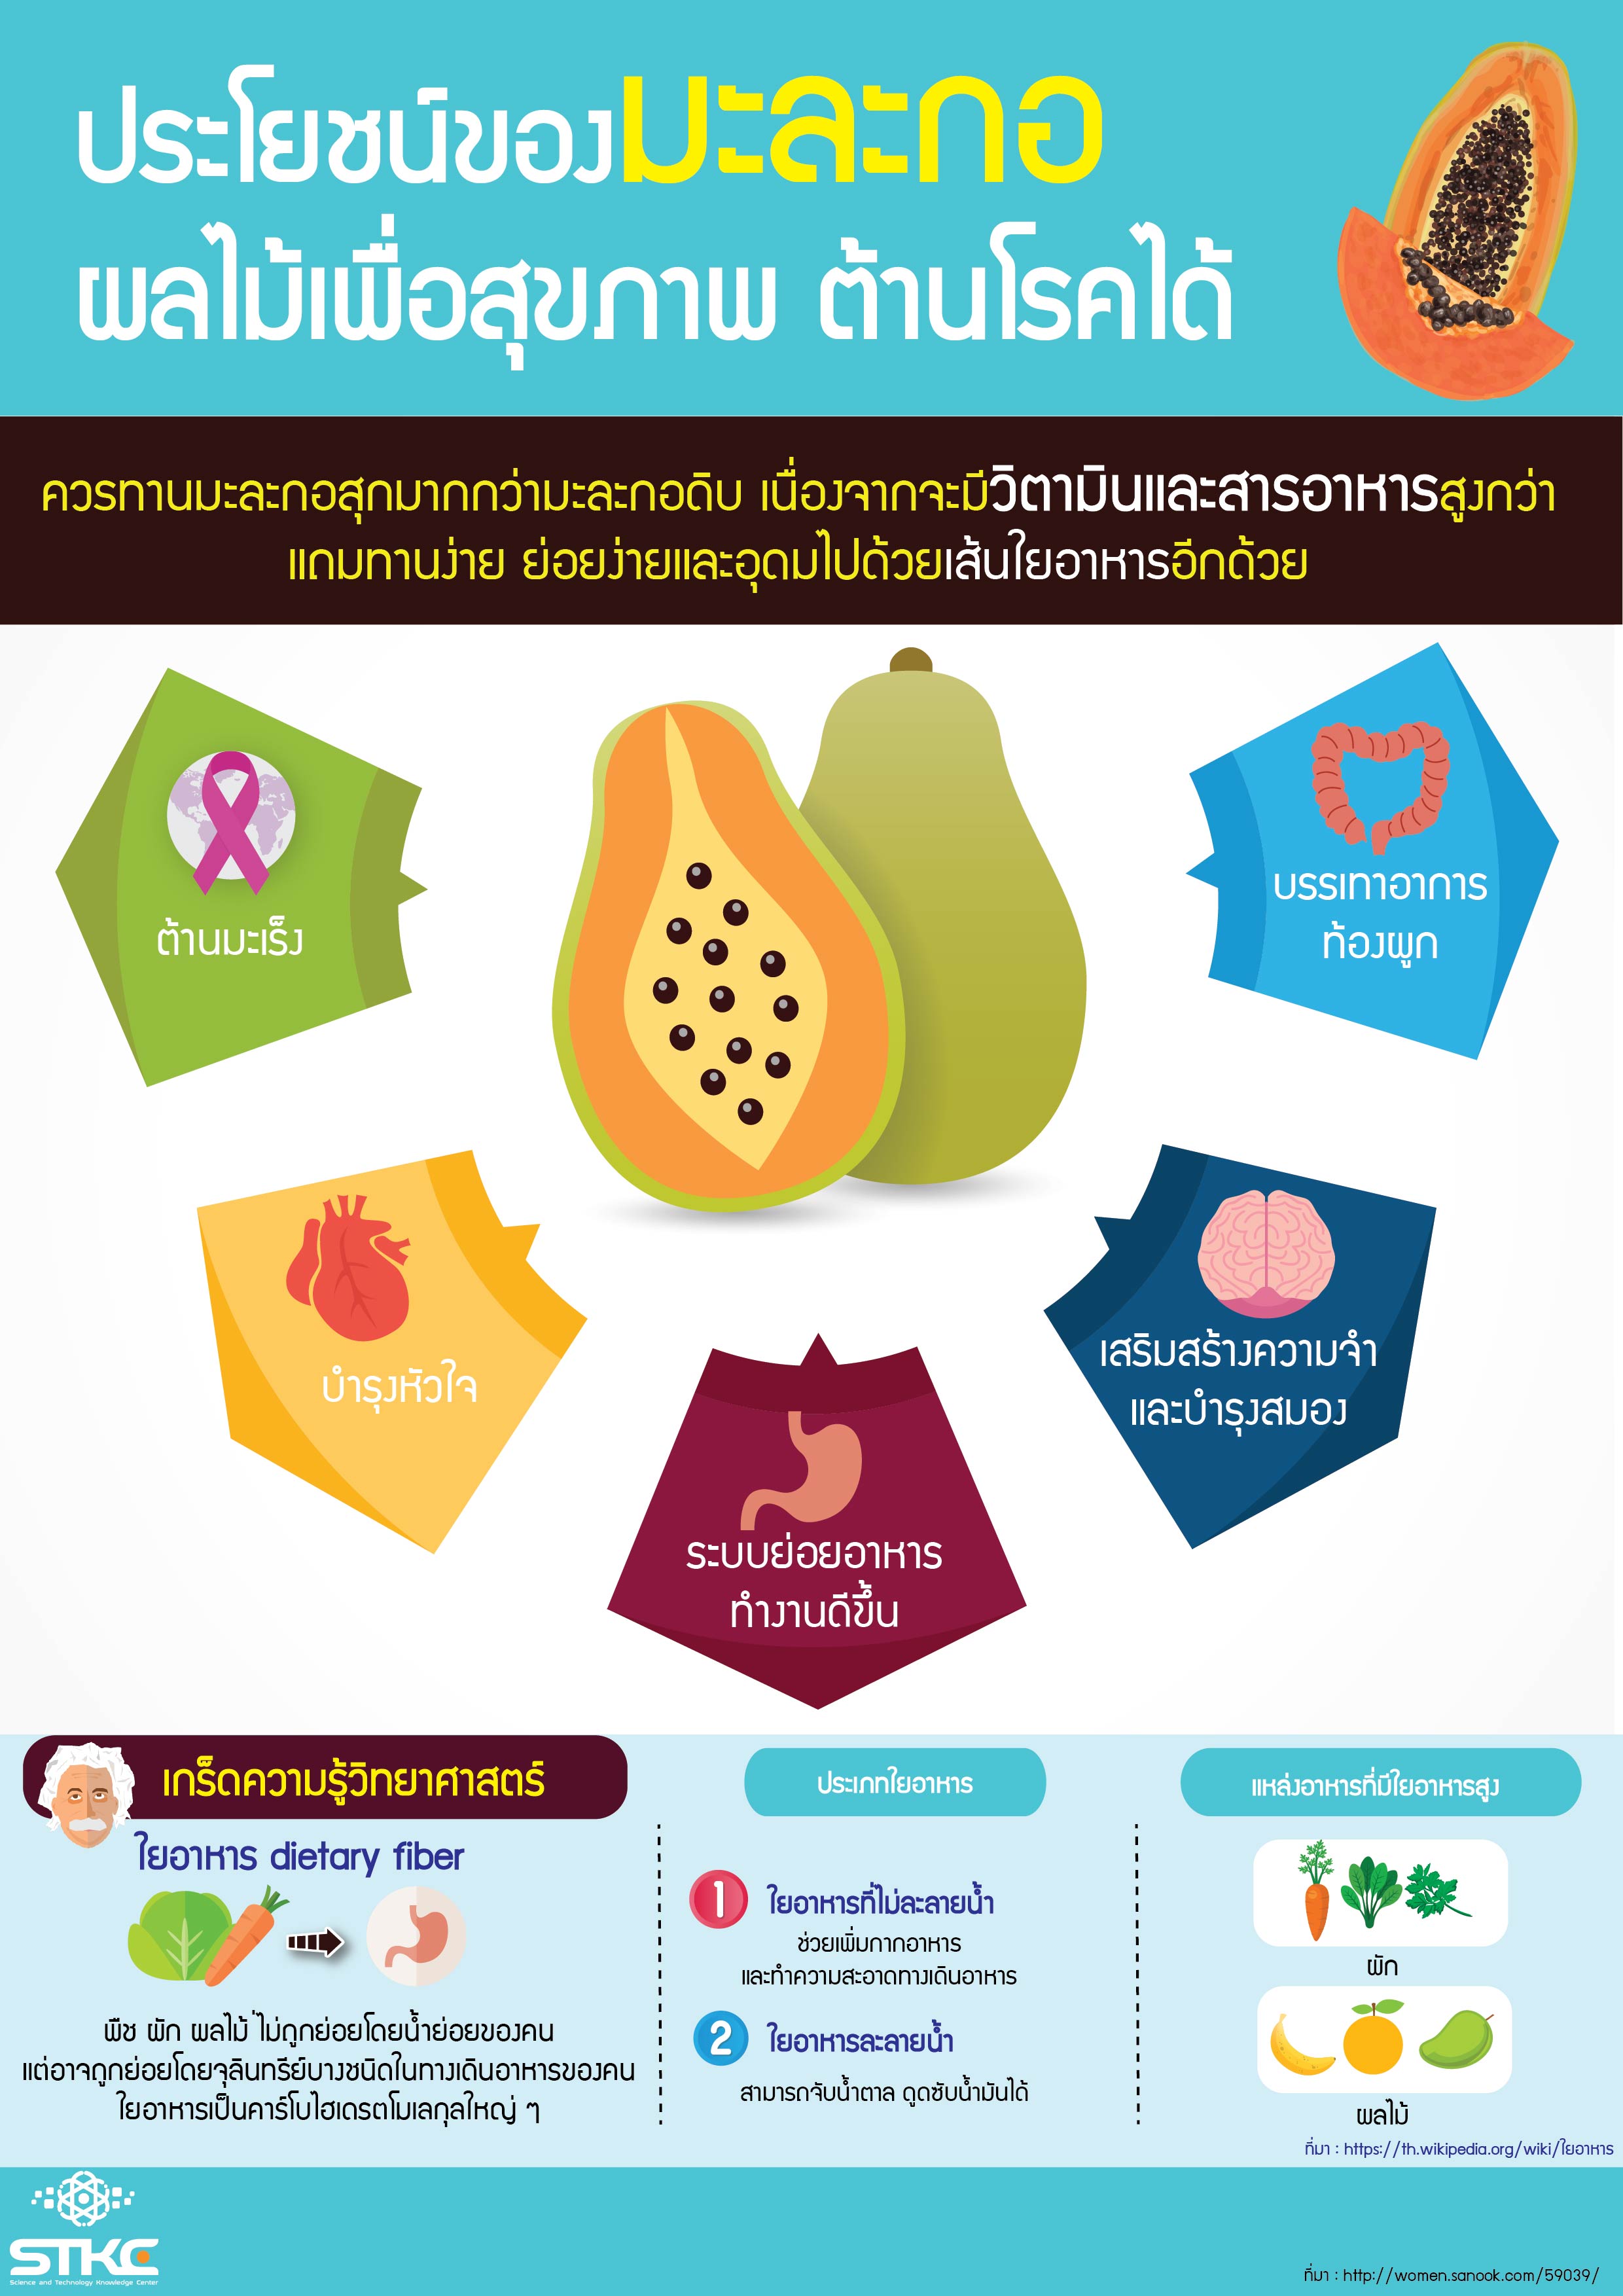 ประโยชน์ของมะละกอ ผลไม้เพื่อสุขภาพต้านโรคได้